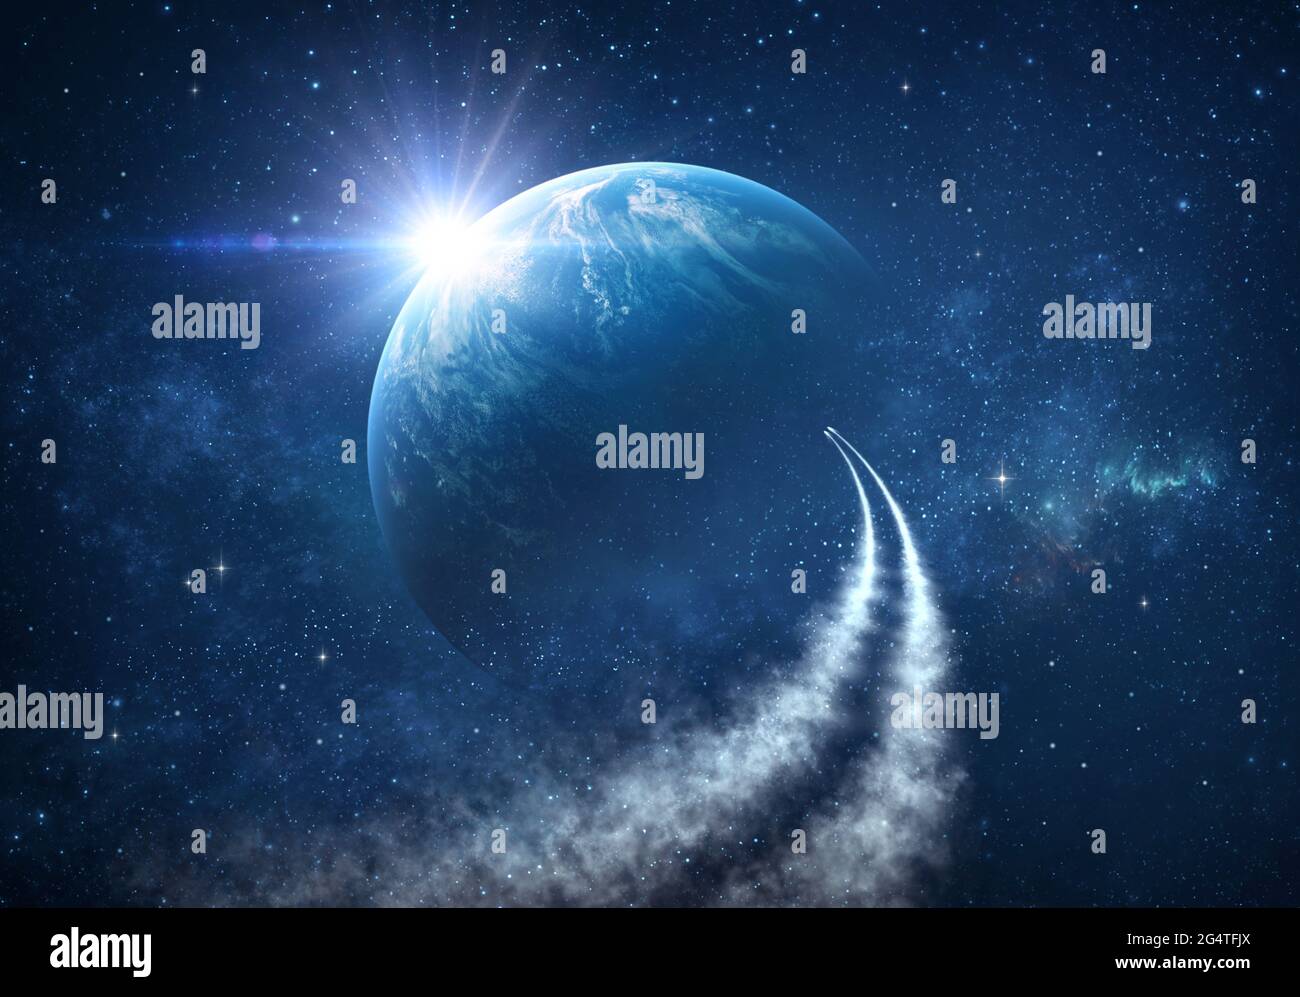 Raumschiffe, die in den Weltraum reisen und das Universum, Sternenkonstellationen und Nebel erkunden. Kometen im Weltraum erreichen den Planeten Erde. Stockfoto